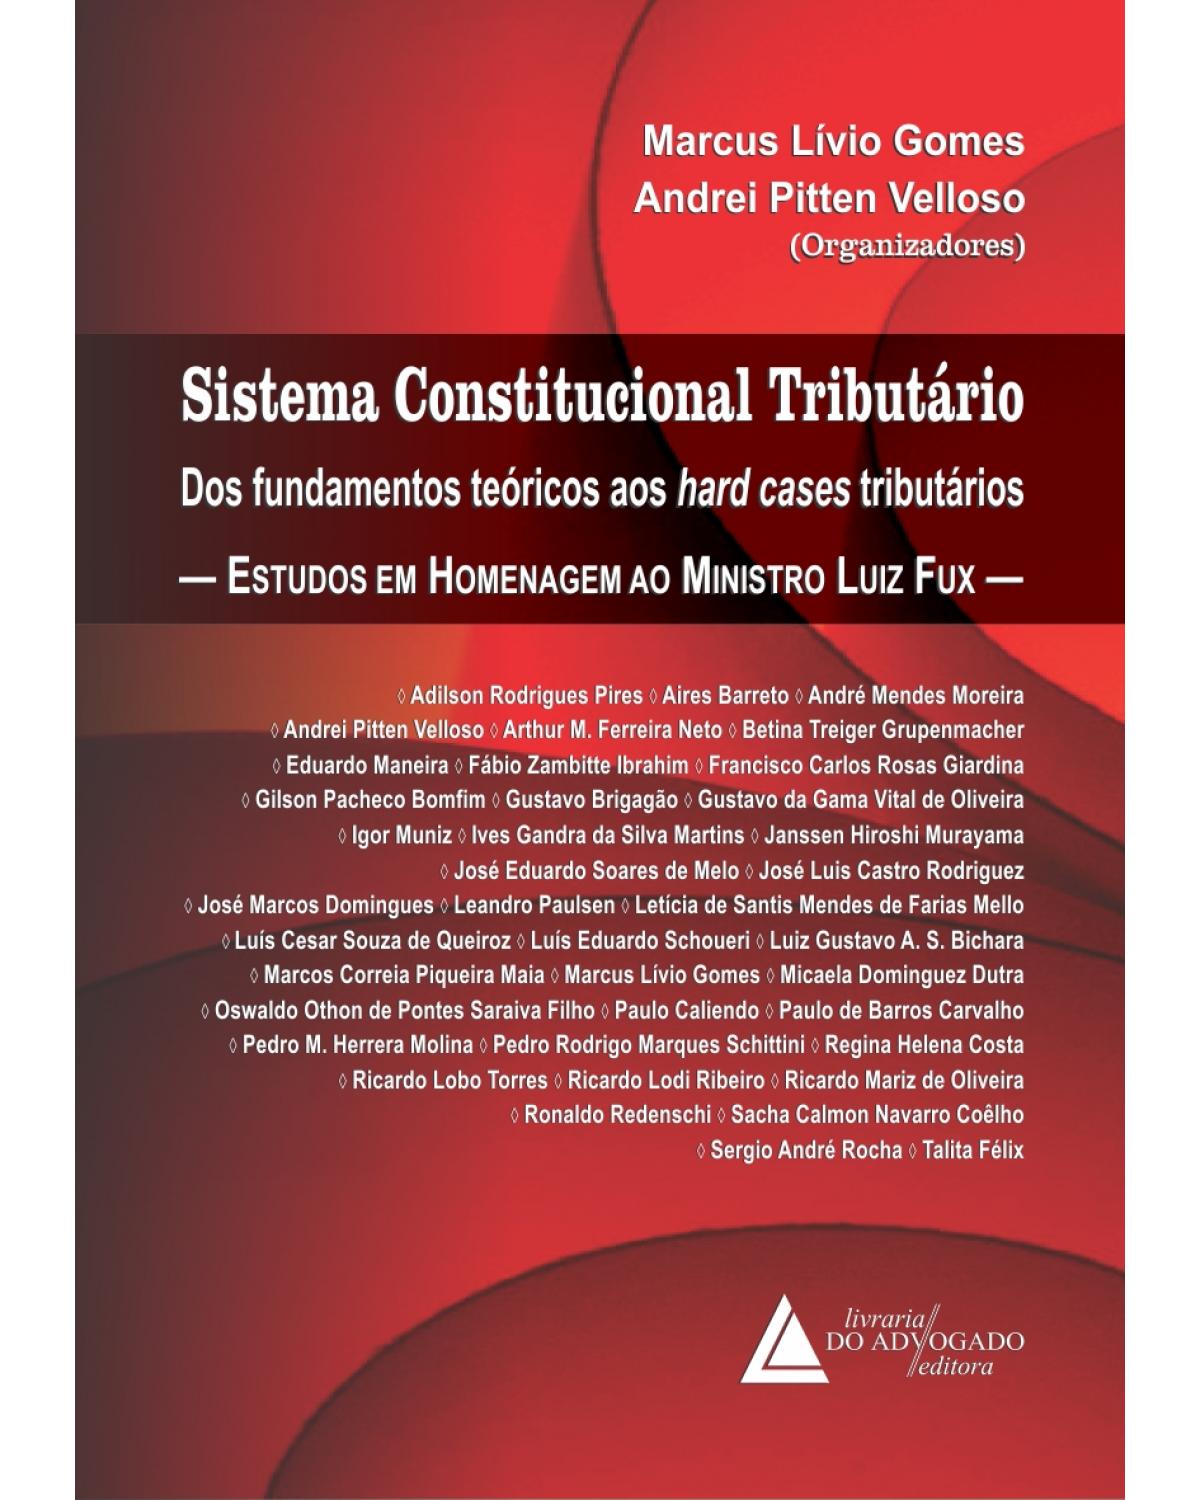 Sistema constitucional tributário - Dos fundamentos teóricos aos hard cases tributários - Estudos em homenagem ao Ministro Luiz Fux